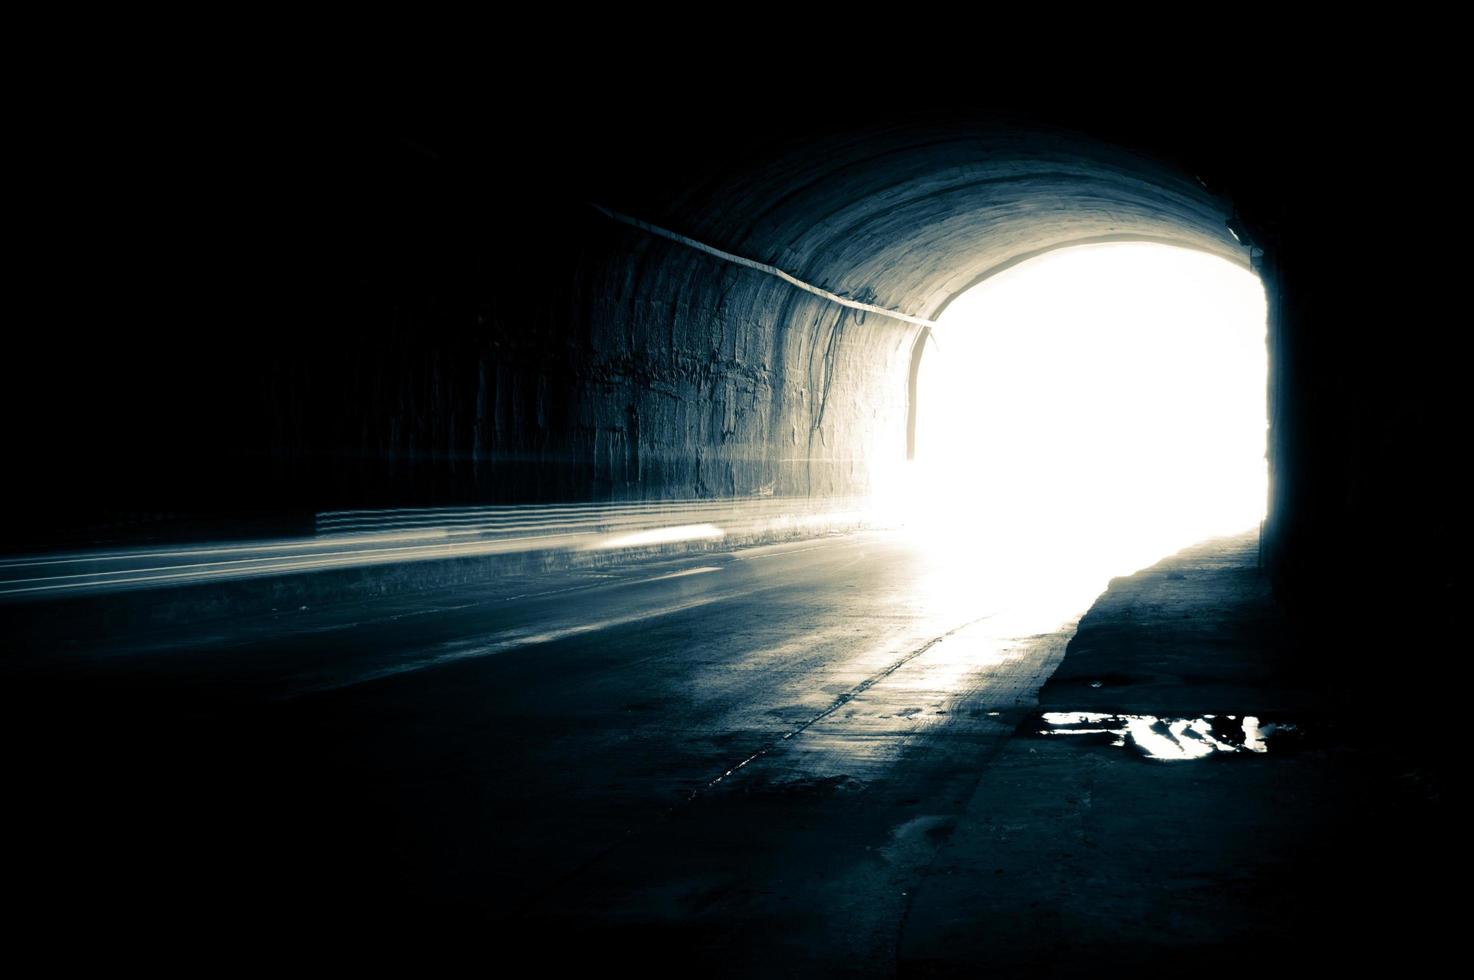 um túnel escuro com trilhas claras foto